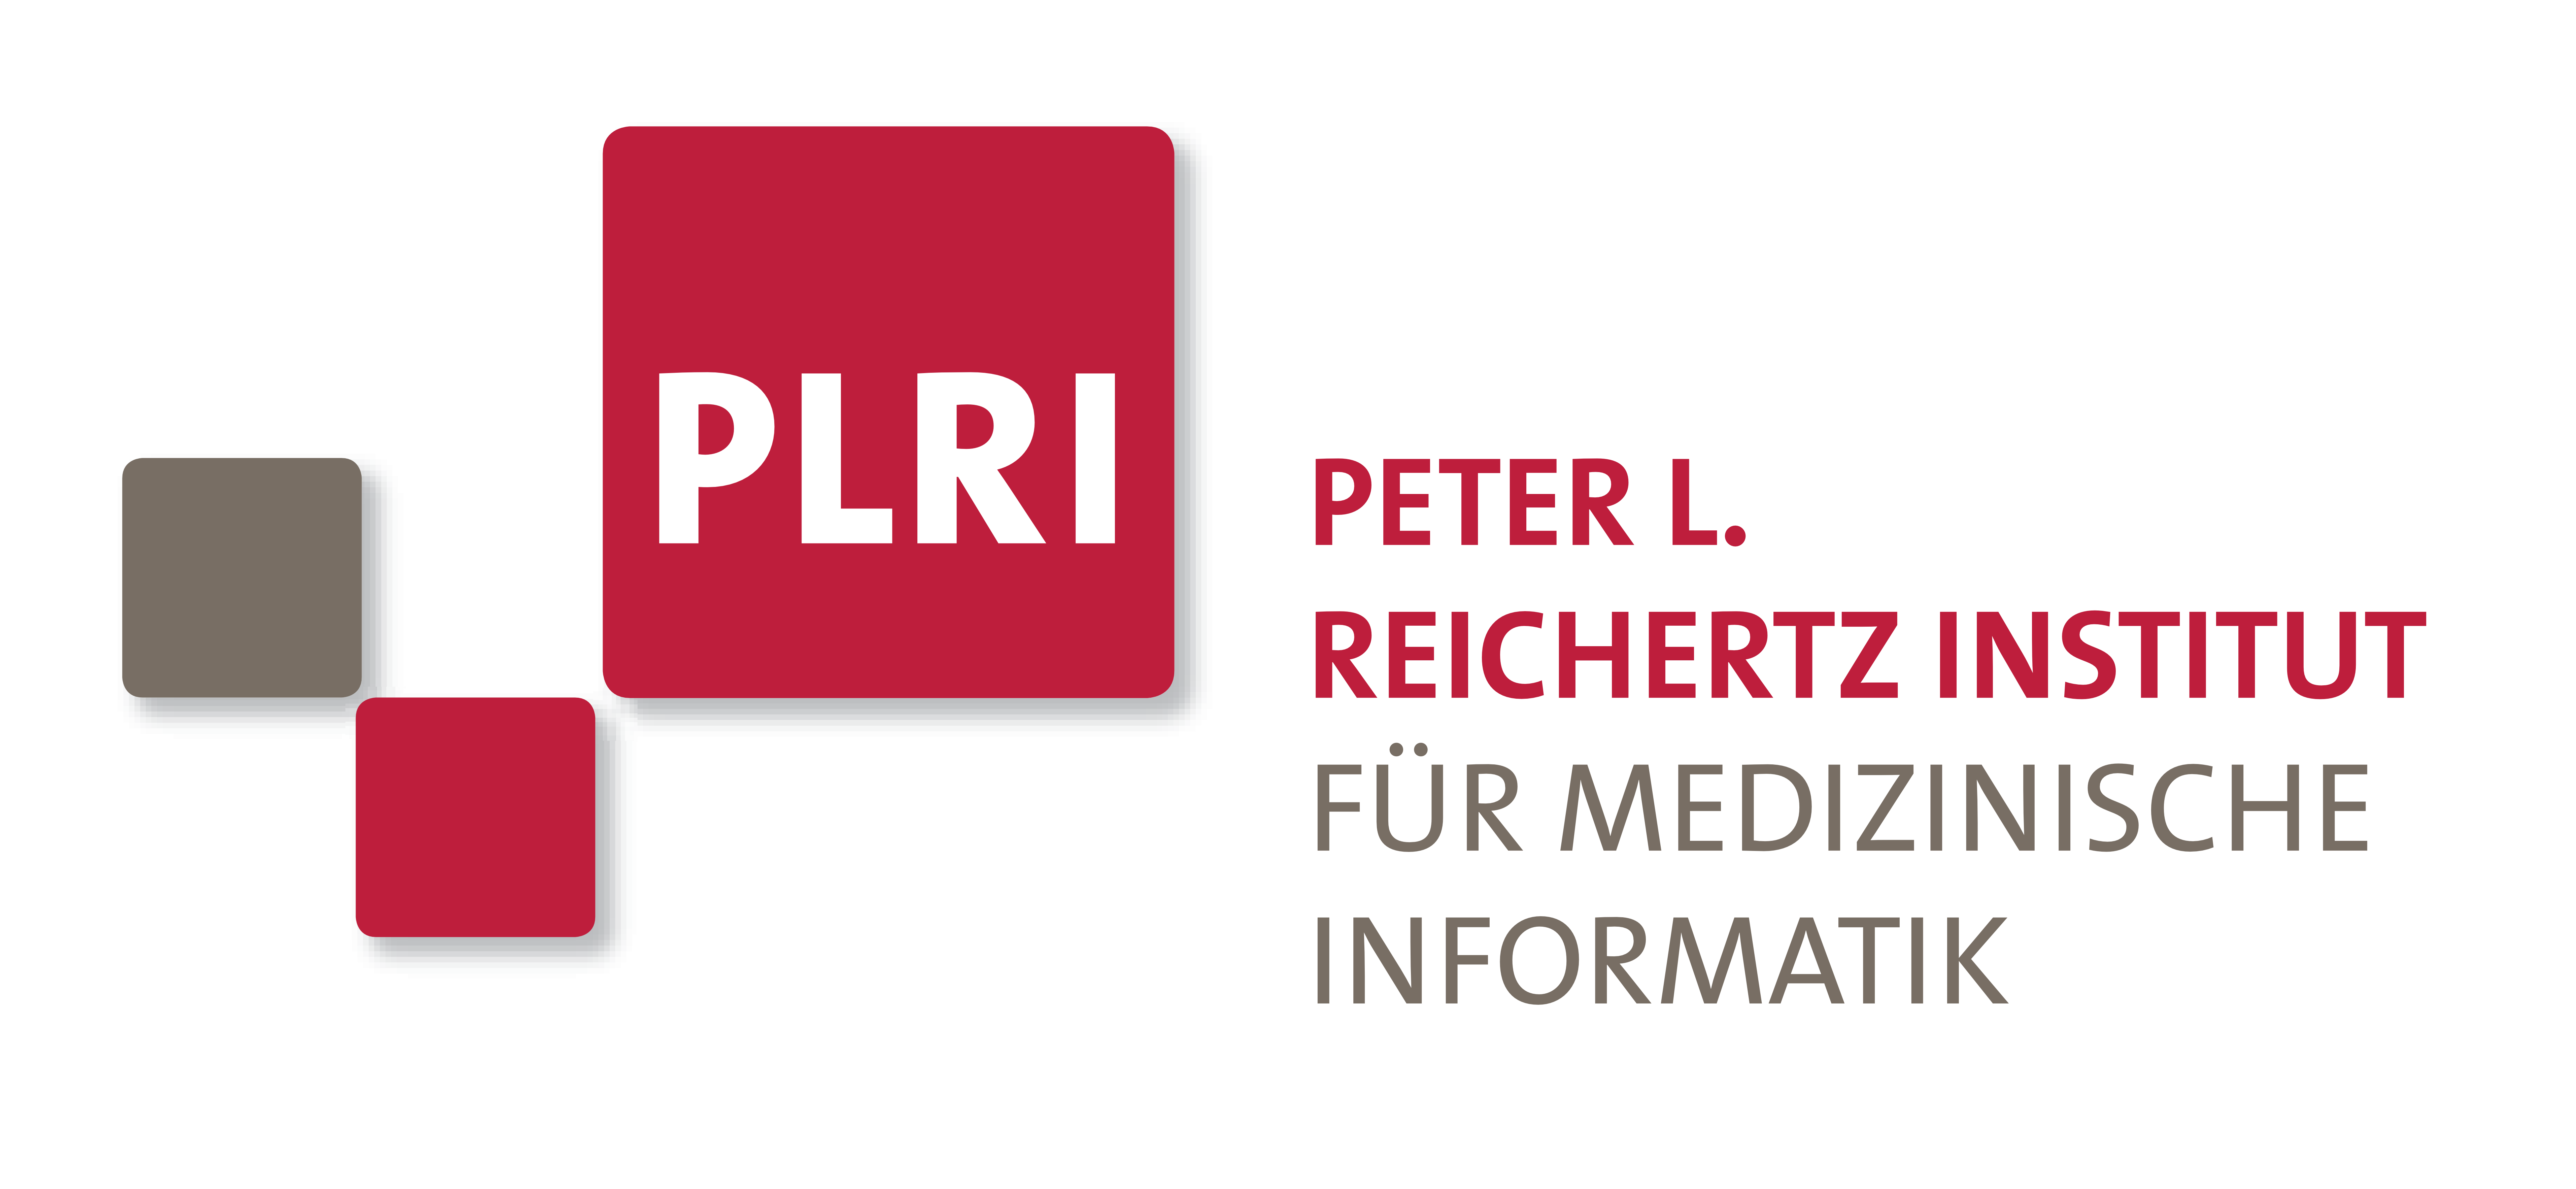 Peter L. Reichertz Institut für Medizinische Informatik: PLRI